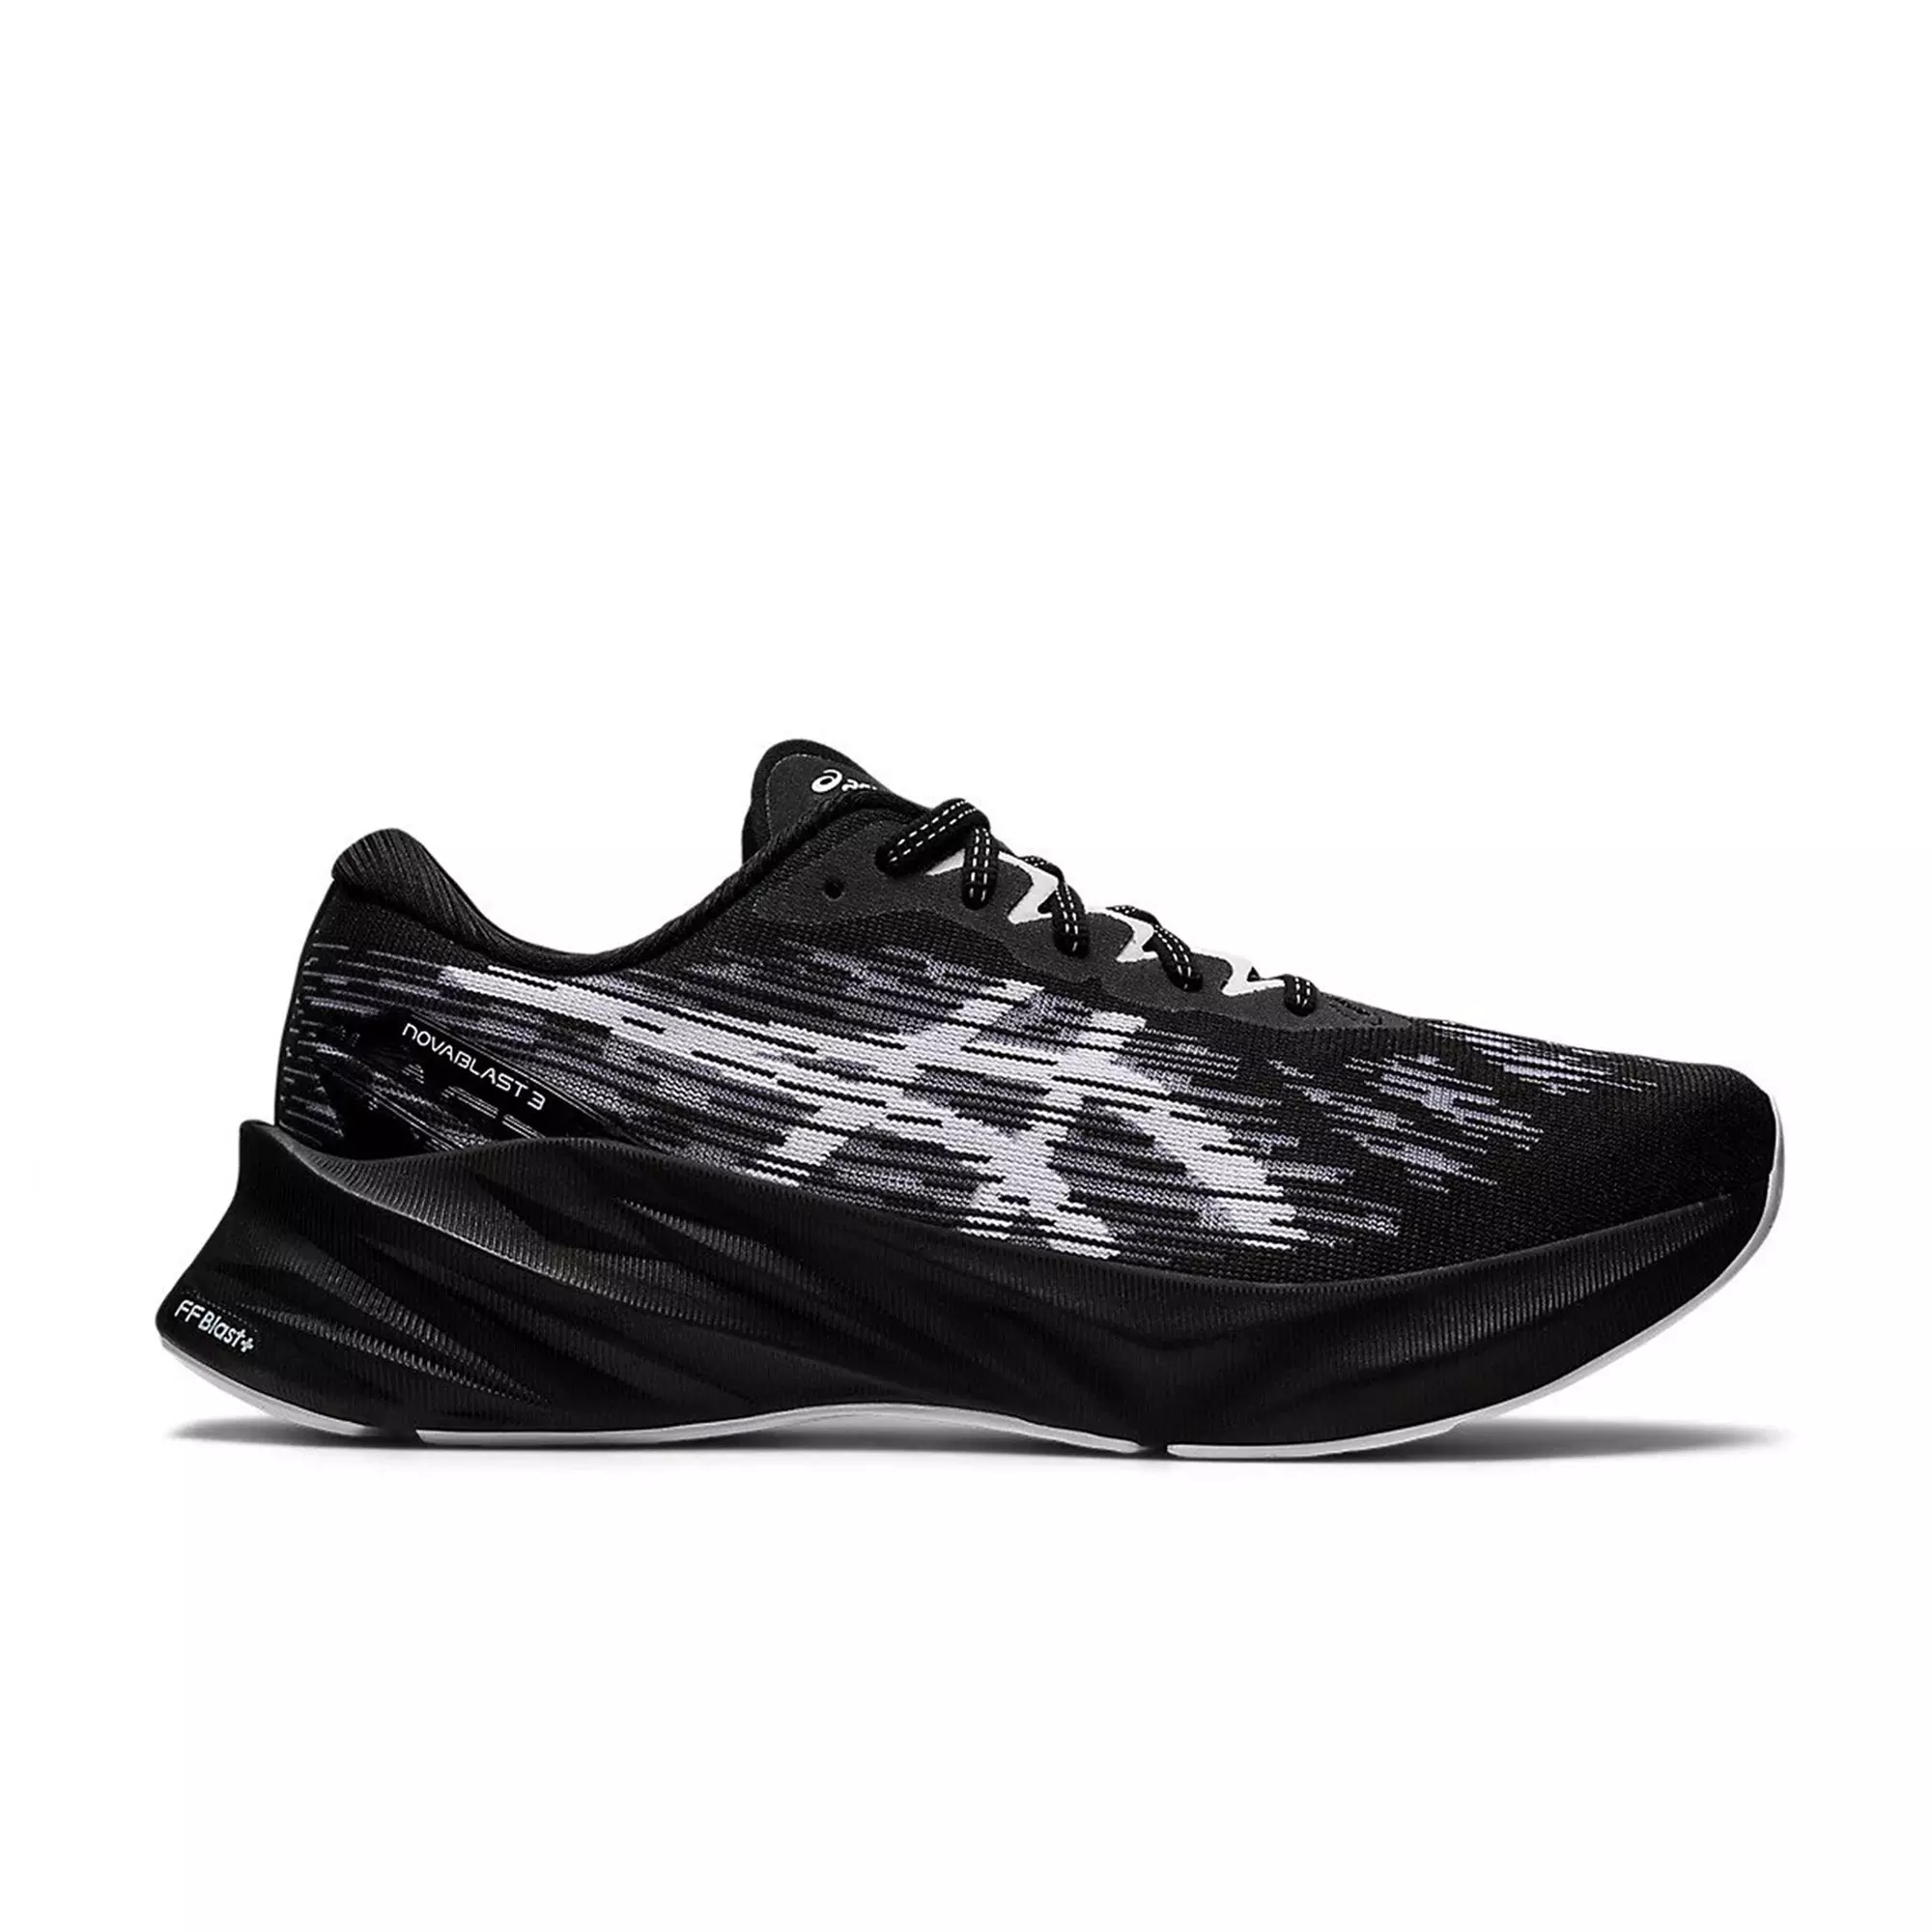 Asics NOVABLAST 3 Black/White Men's Running Shoe - Hibbett